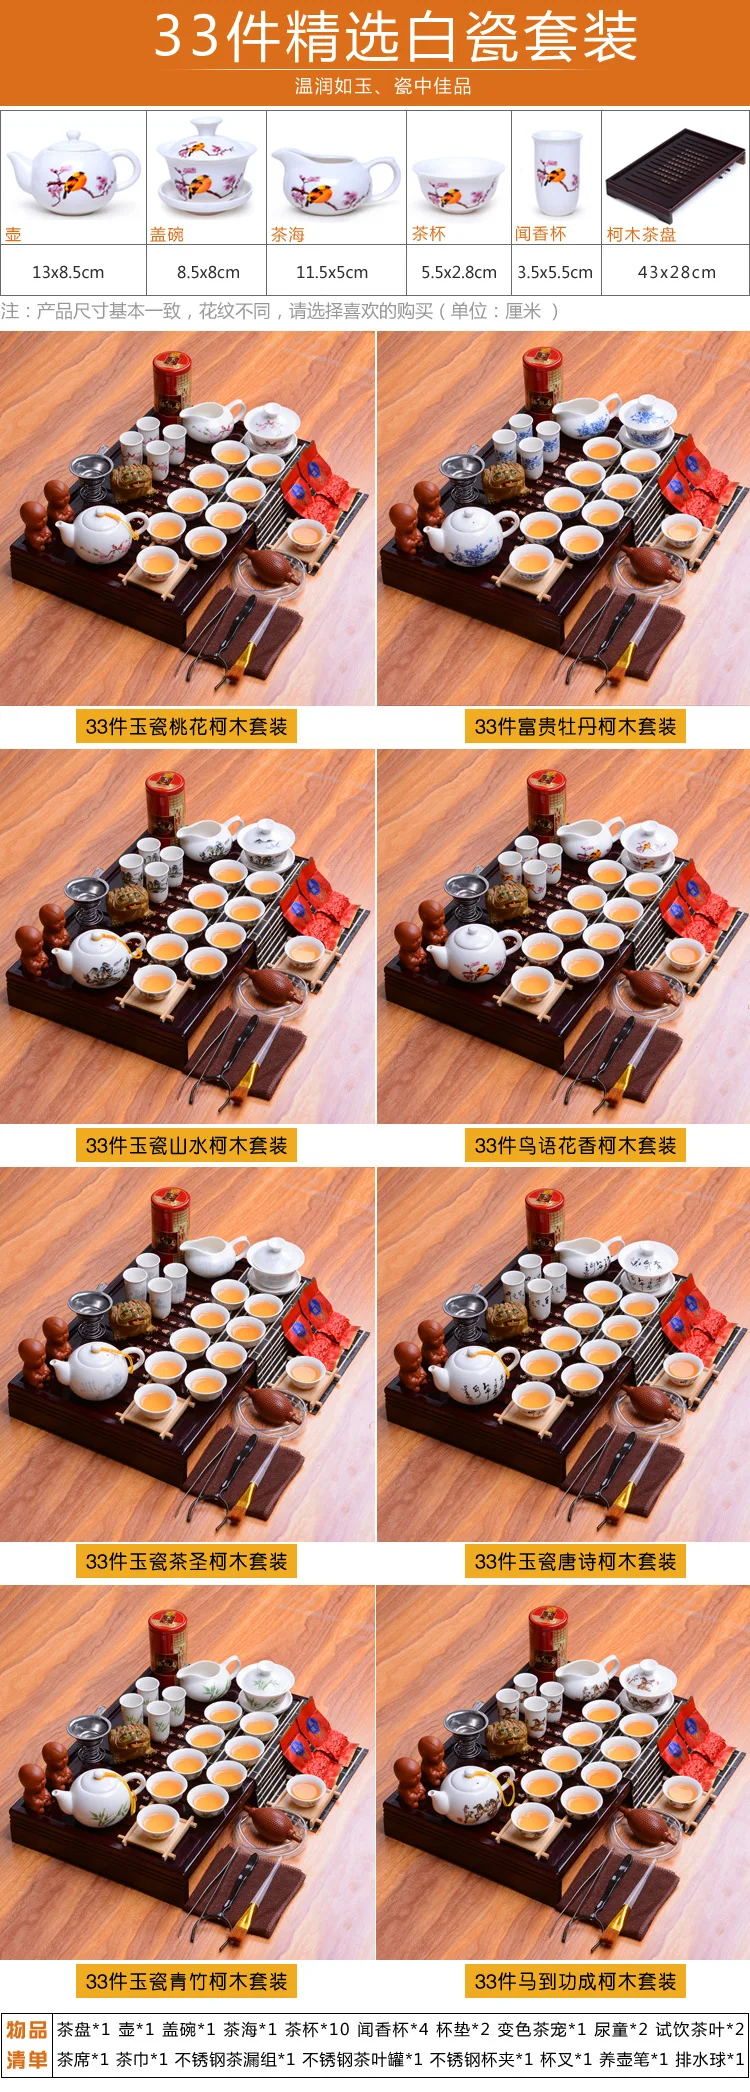 Весь Китайский кунг-фу чайные наборы, Китай керамический чайный набор деревянный поднос для час гостиная чай Настольный набор для чая церемония Аксессуары